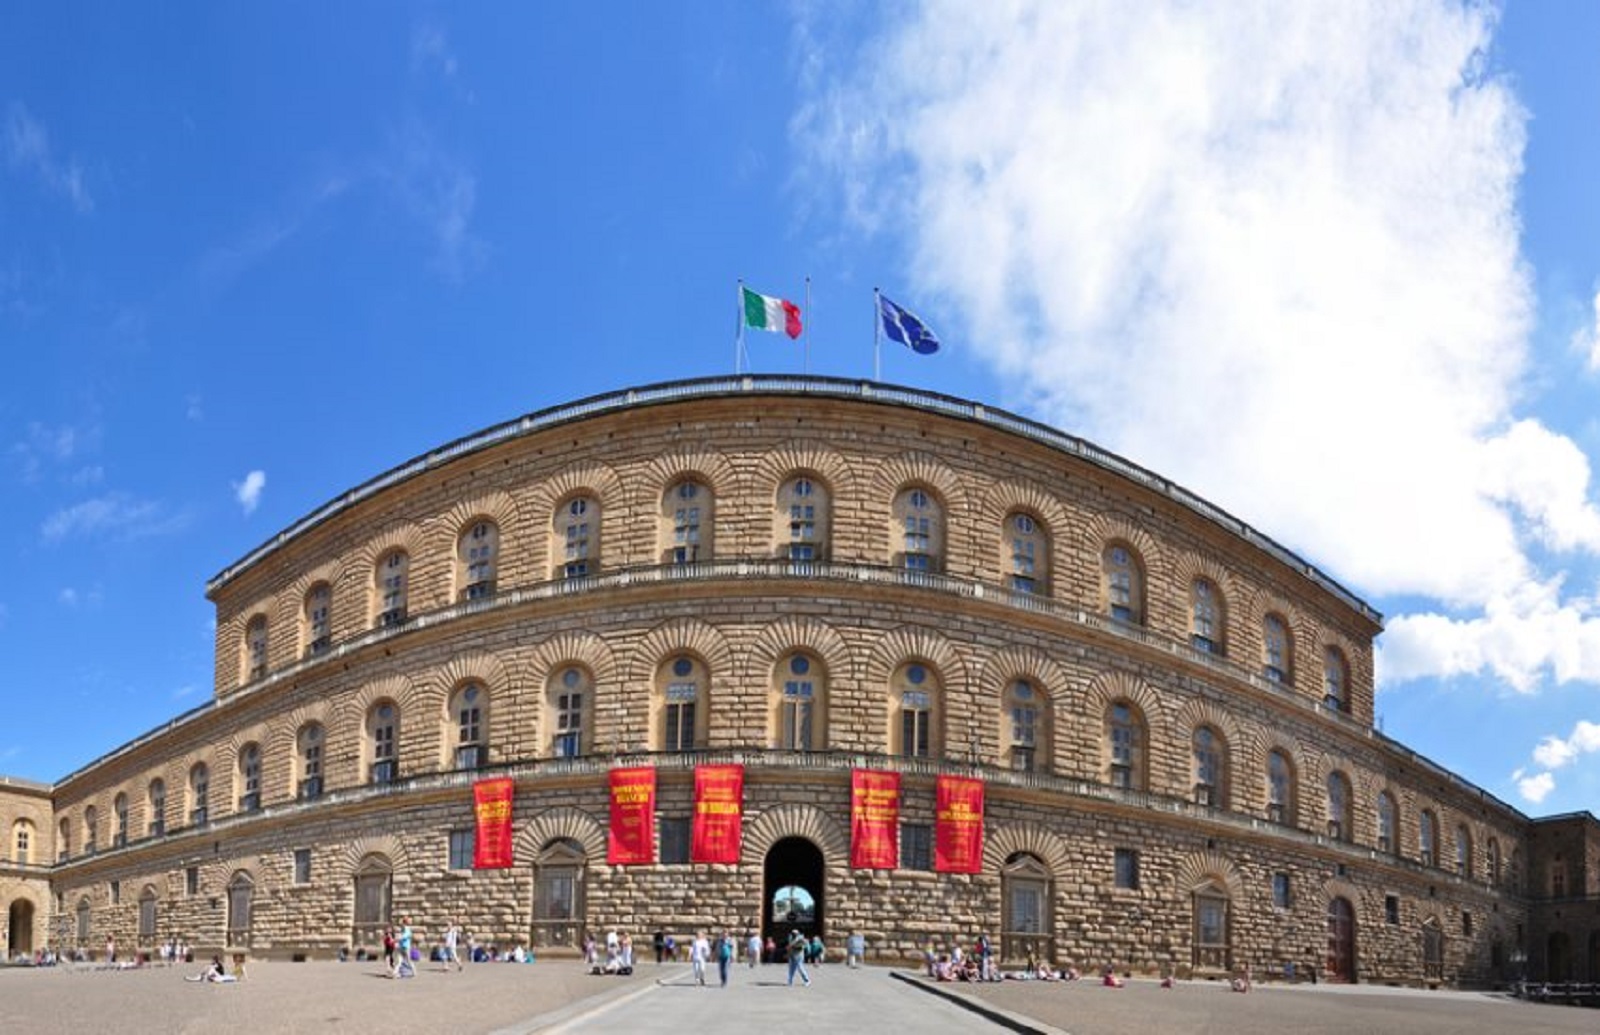 Visita guiada del Palacio Pitti y la Galería Palatina en Florencia